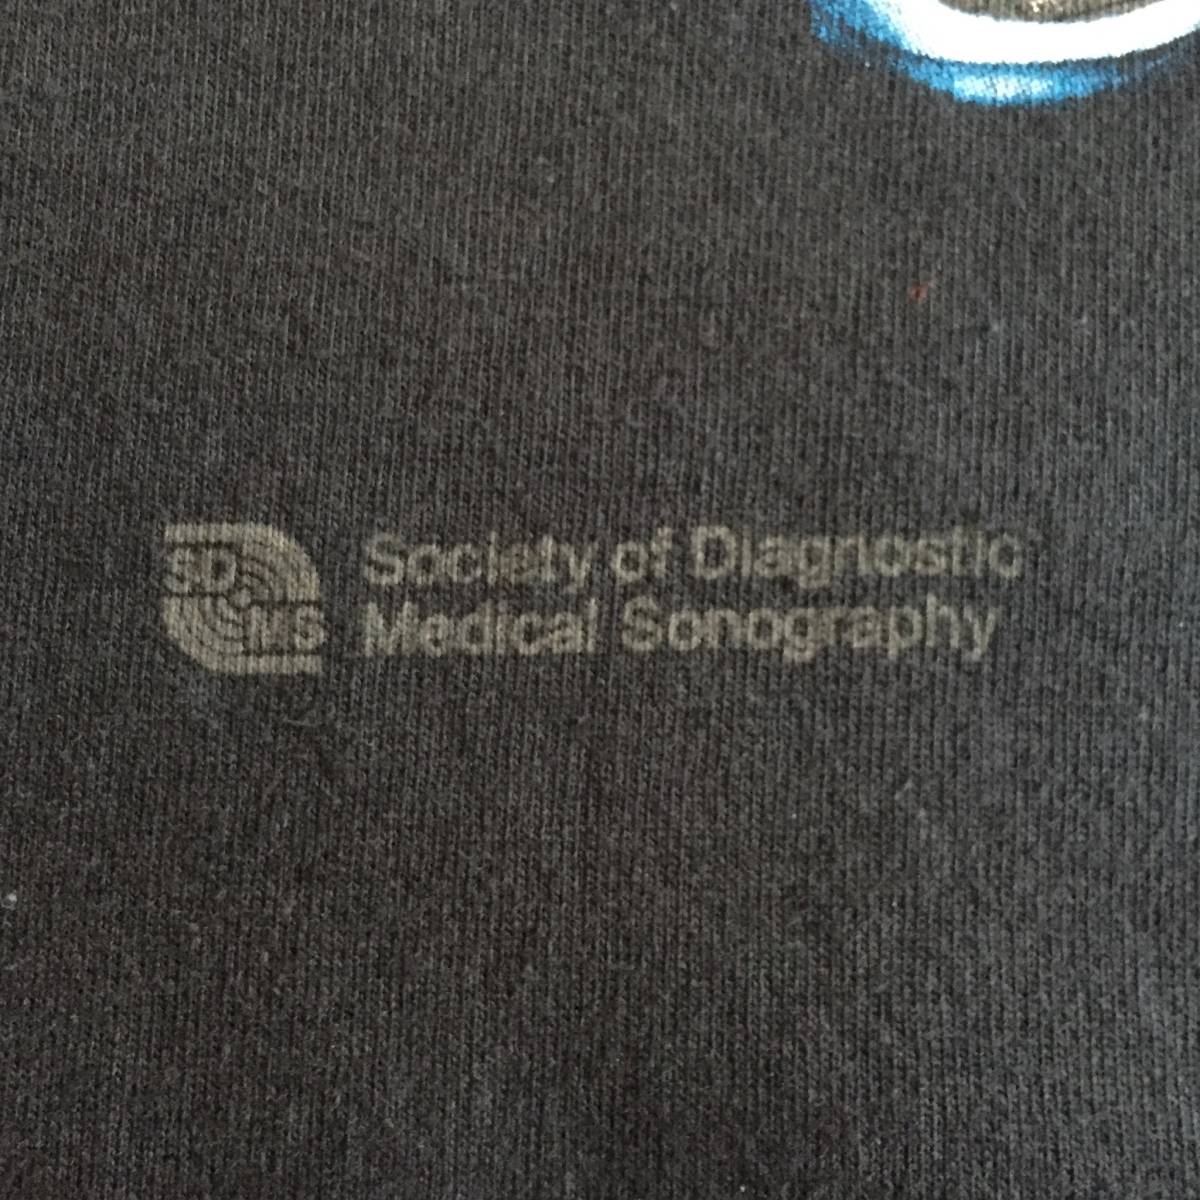 Society of Diagnostic Medical Sonography SDMS プリントT Tシャツ 黒 ブラック GILDAN Ultra Cotton ギルダン Mサイズ 100% COTTON_画像6